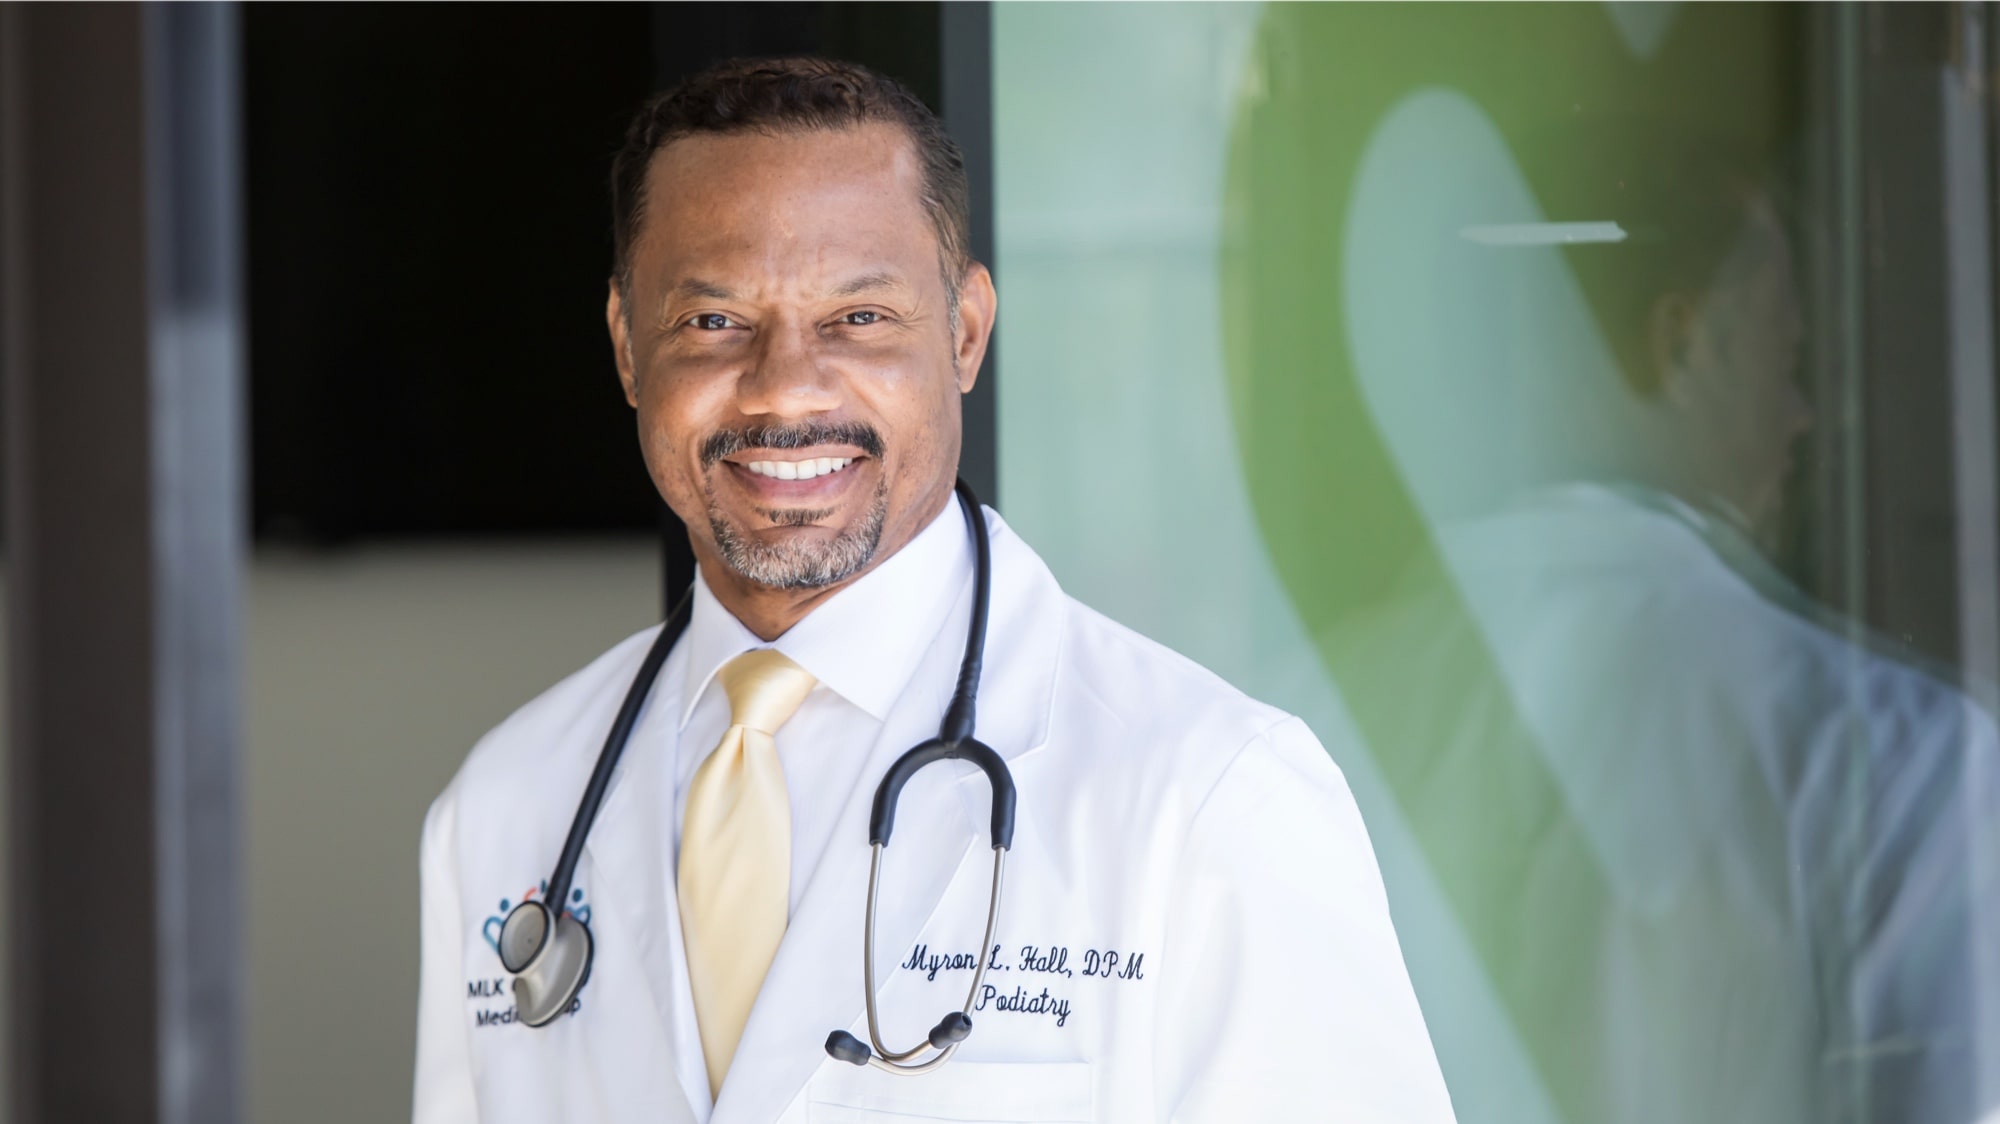 Middle-aged black doctor Dr. Myron Hall smiling